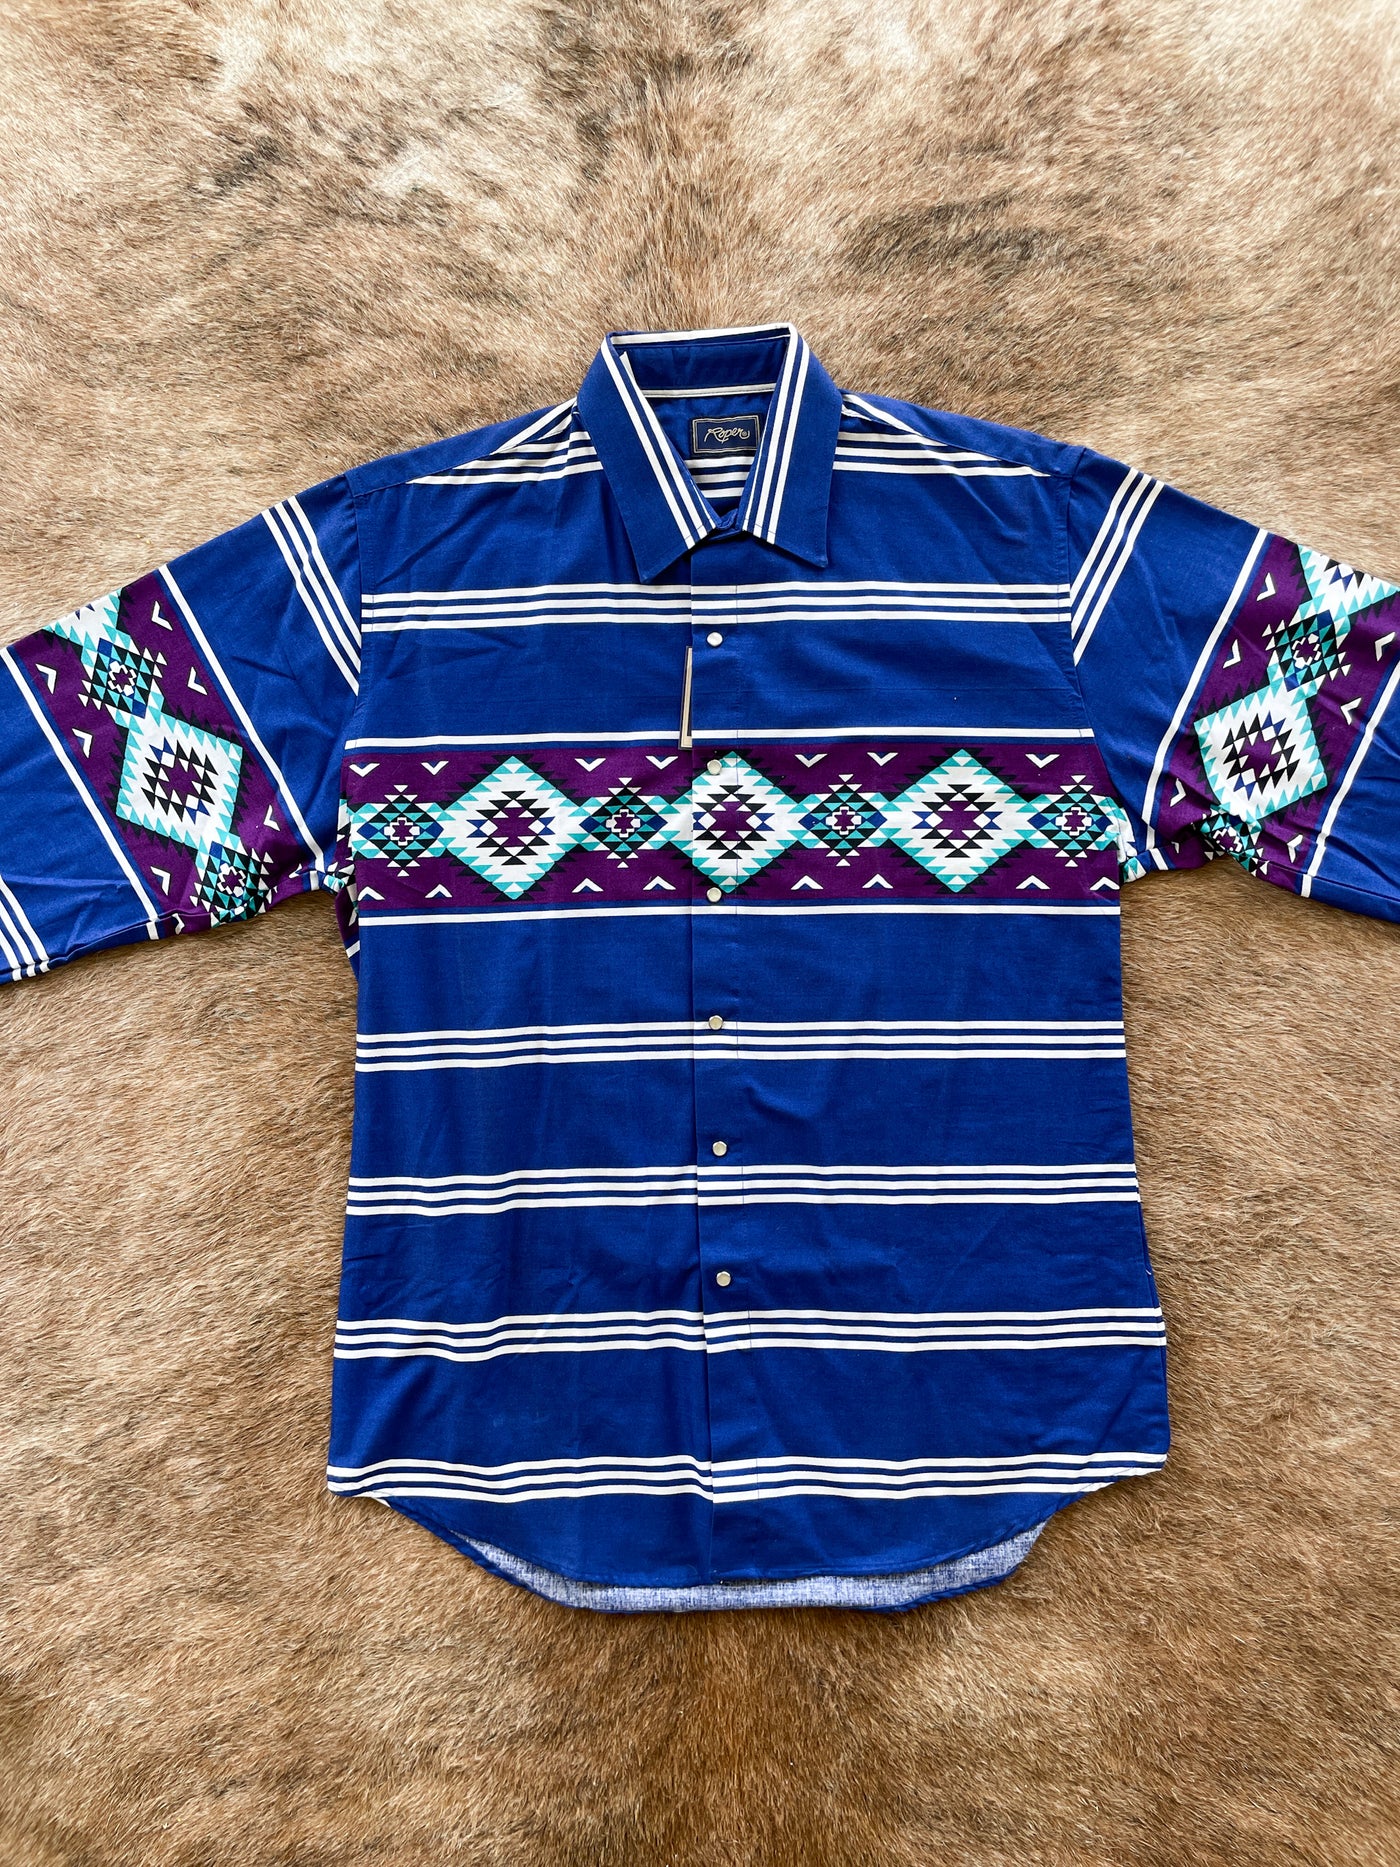 Vintage Roper camisa hombres grande azteca azul perla snap